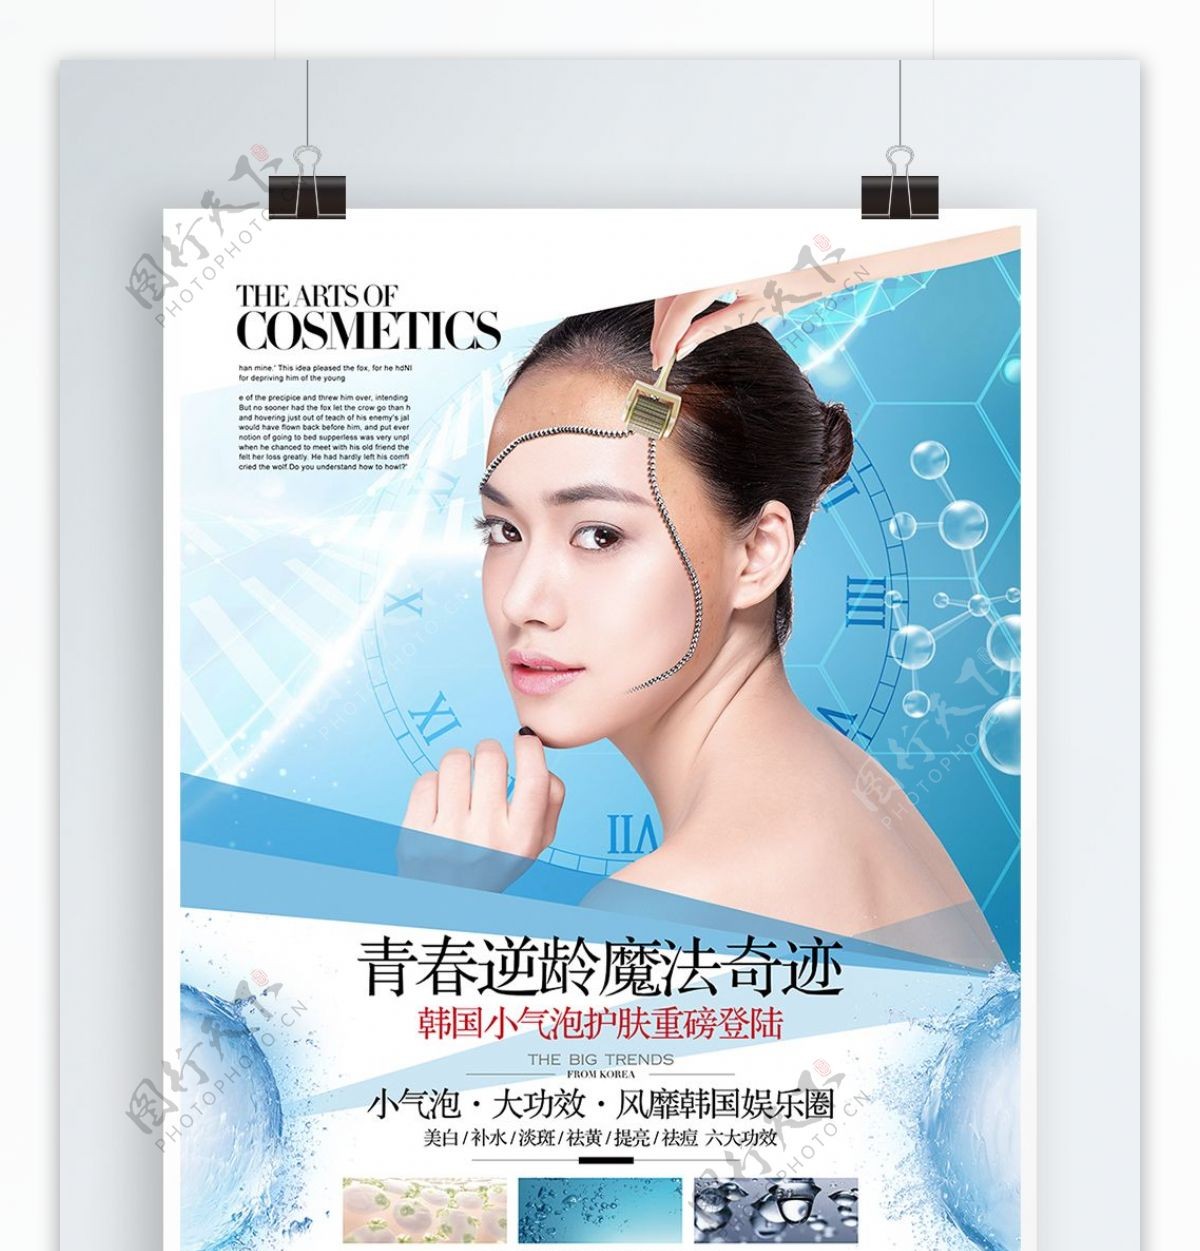 清新简约医疗韩式美容小气泡宣传海报展板